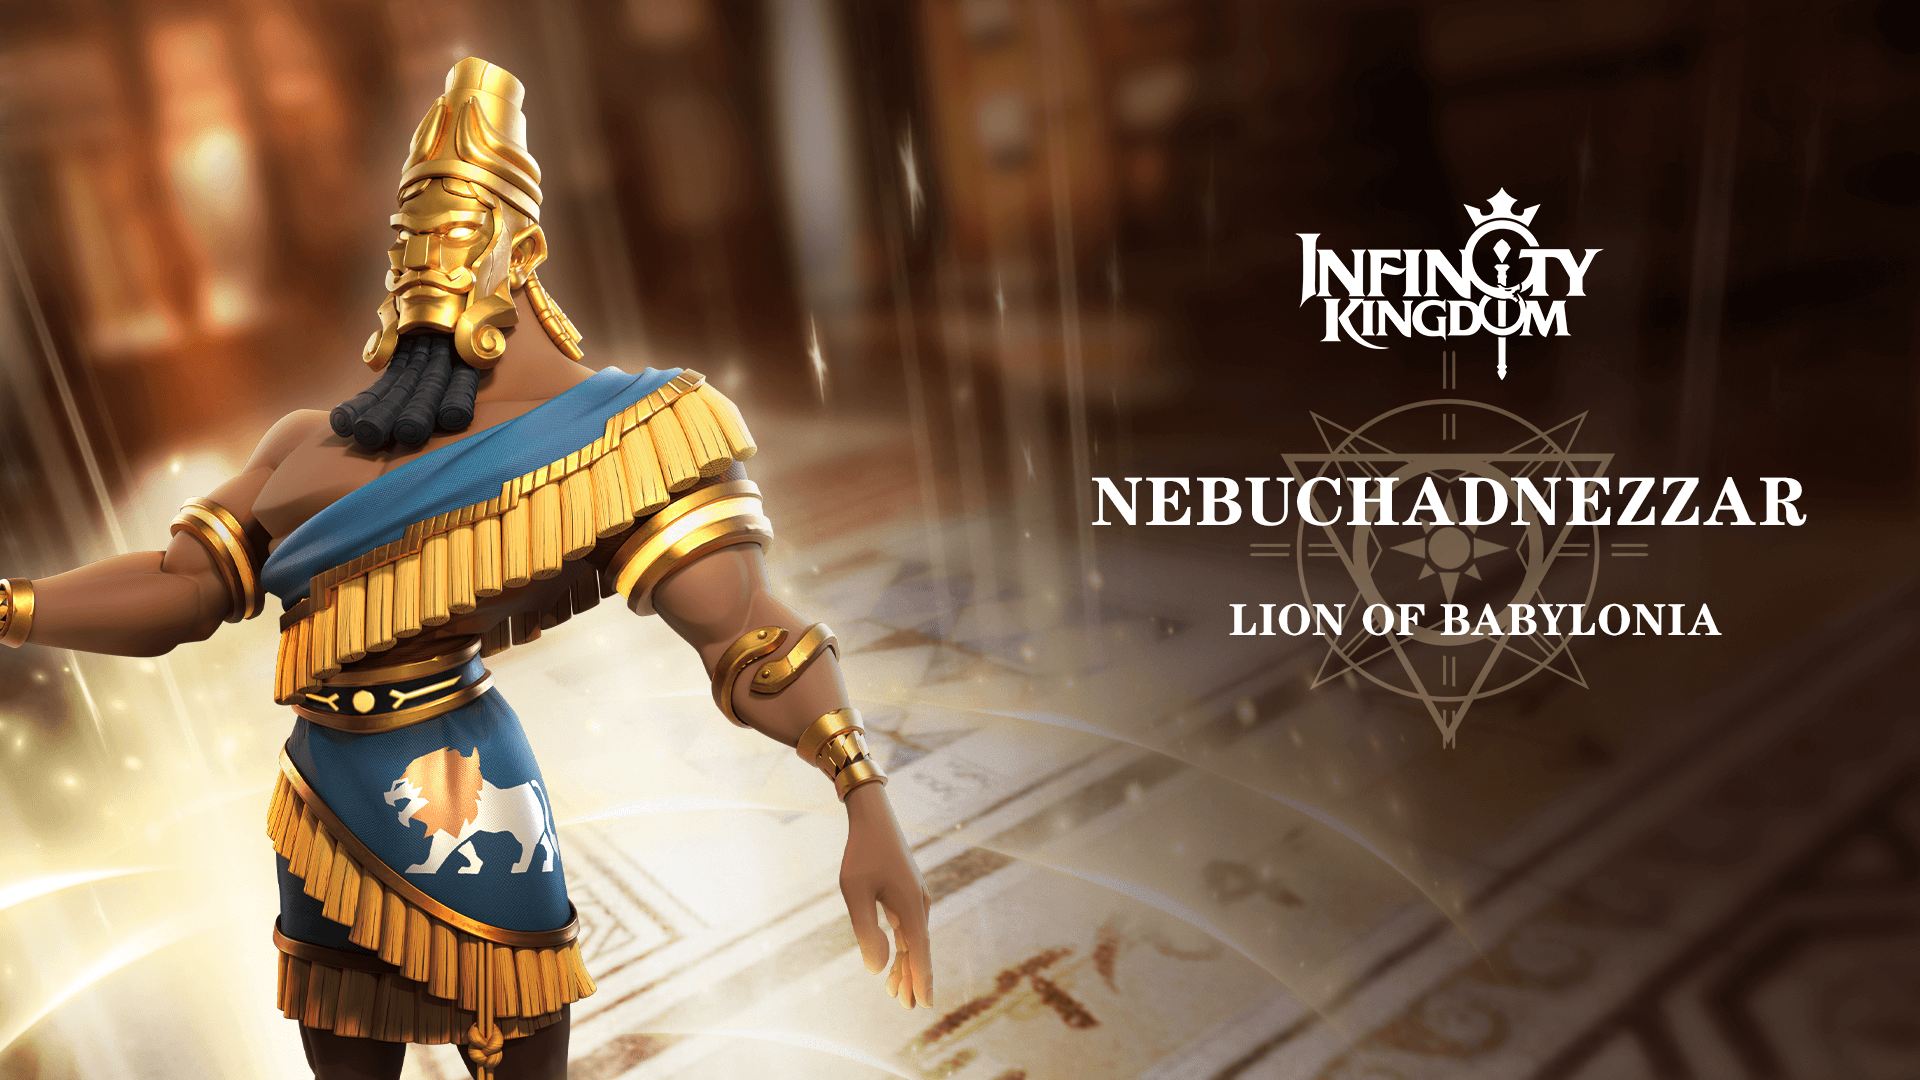 Lion of Babylonia - Nebuchadnezzar